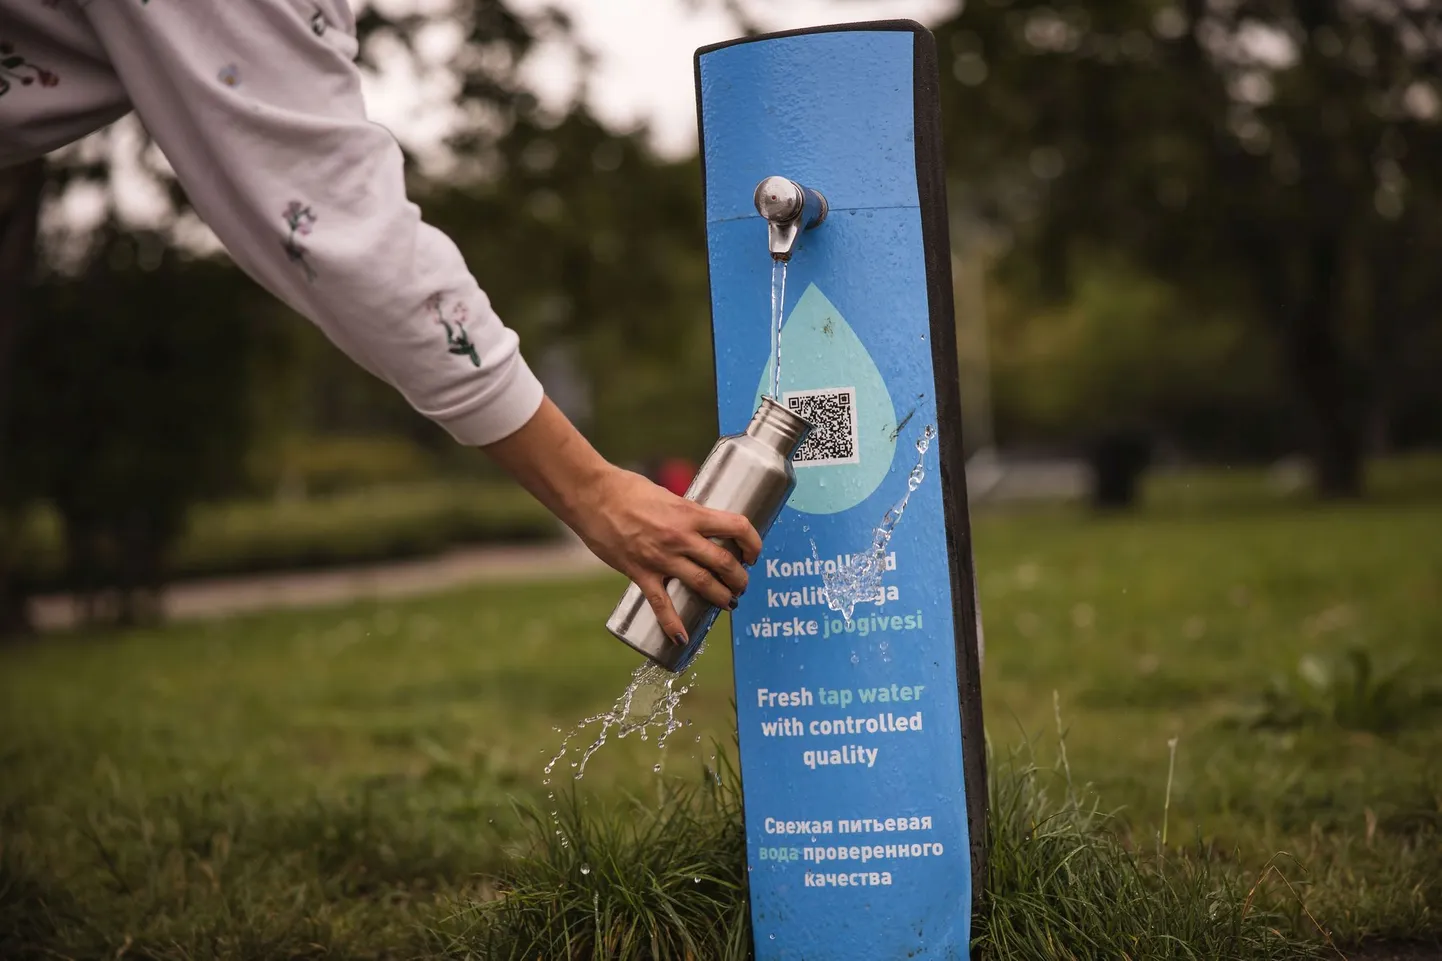 Tasuta joogivesi Tartu tänavatel sai kaasava eelarve rahvahääletusel teise koha.